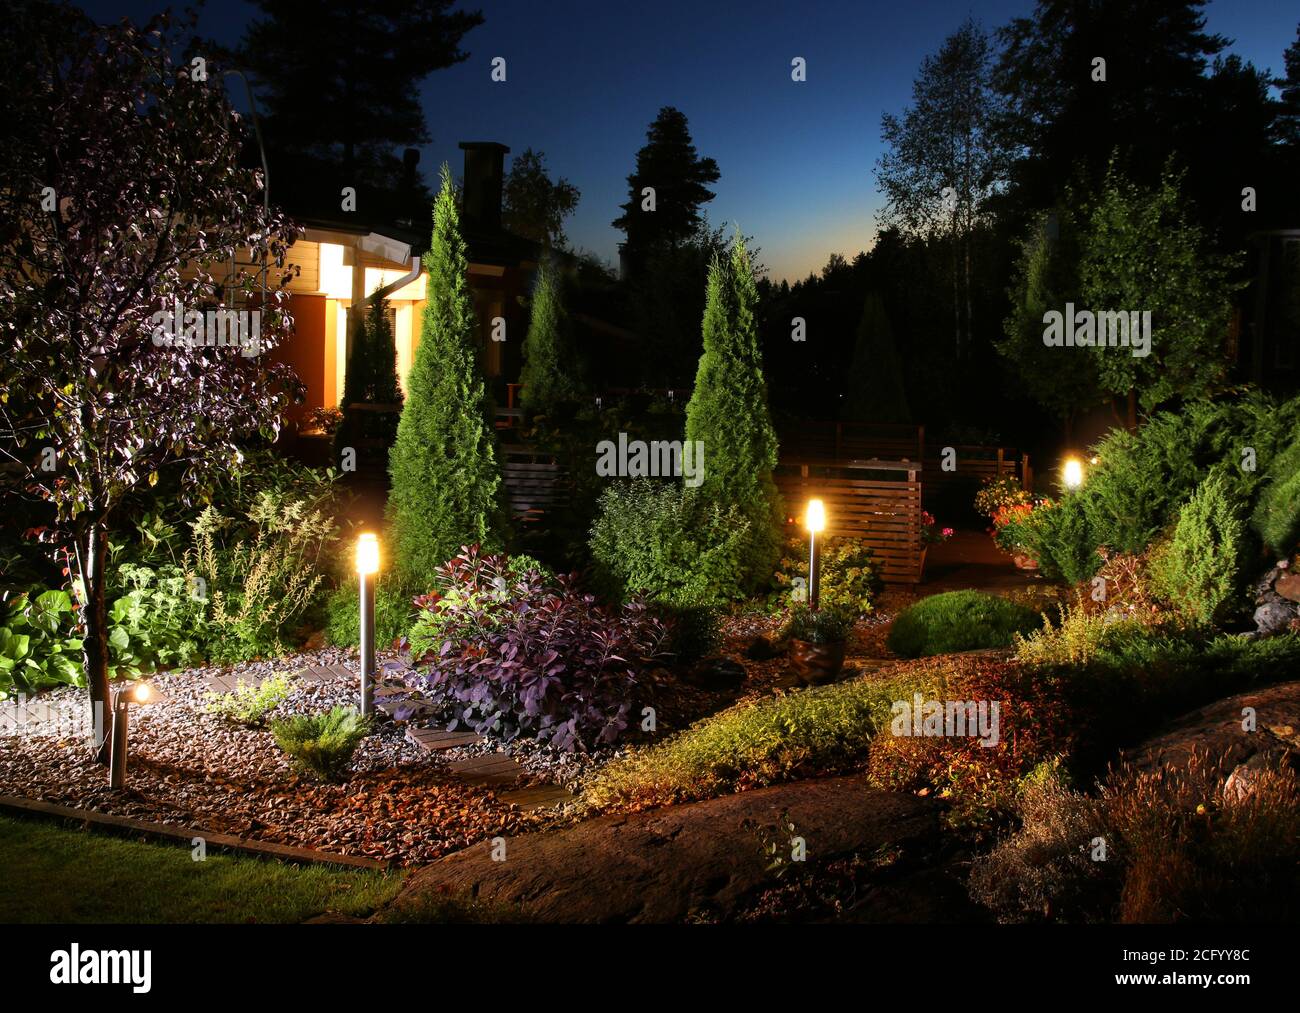 Home garden illumination autumn evening patio lights Stock Photo